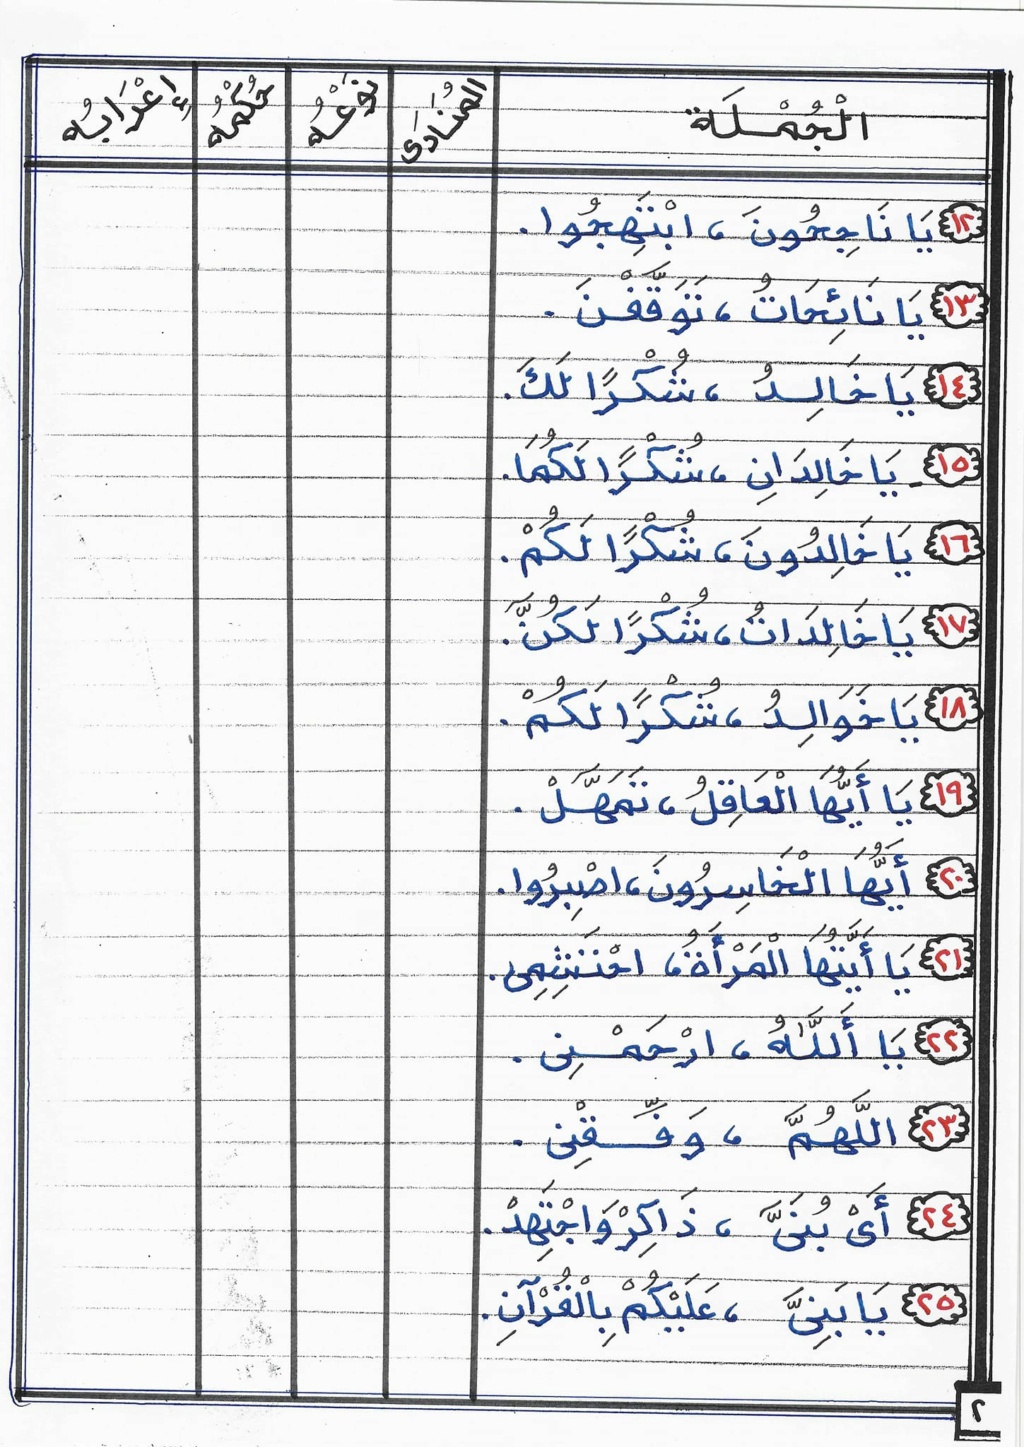 بوكليت مراجعة نحو تالتة إعدادي ترم أول أستاذ الحسيني عبدالمجيد 2365